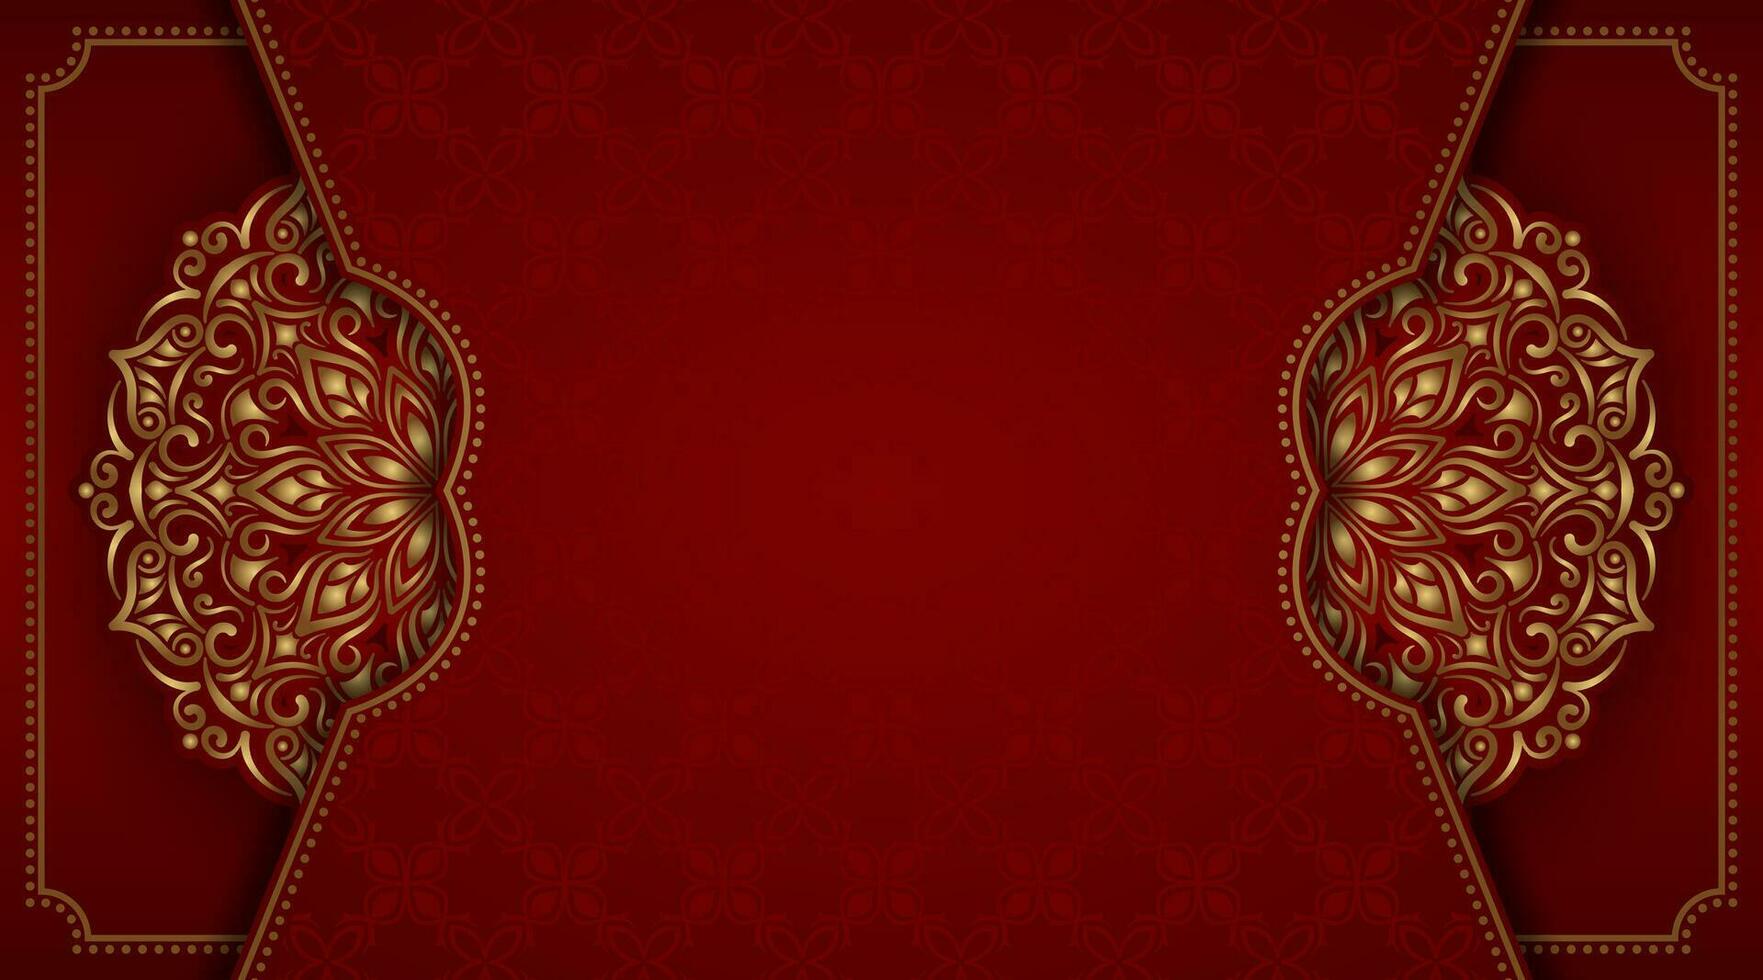 dekorativ röd bakgrund, med guld mandala dekoration vektor